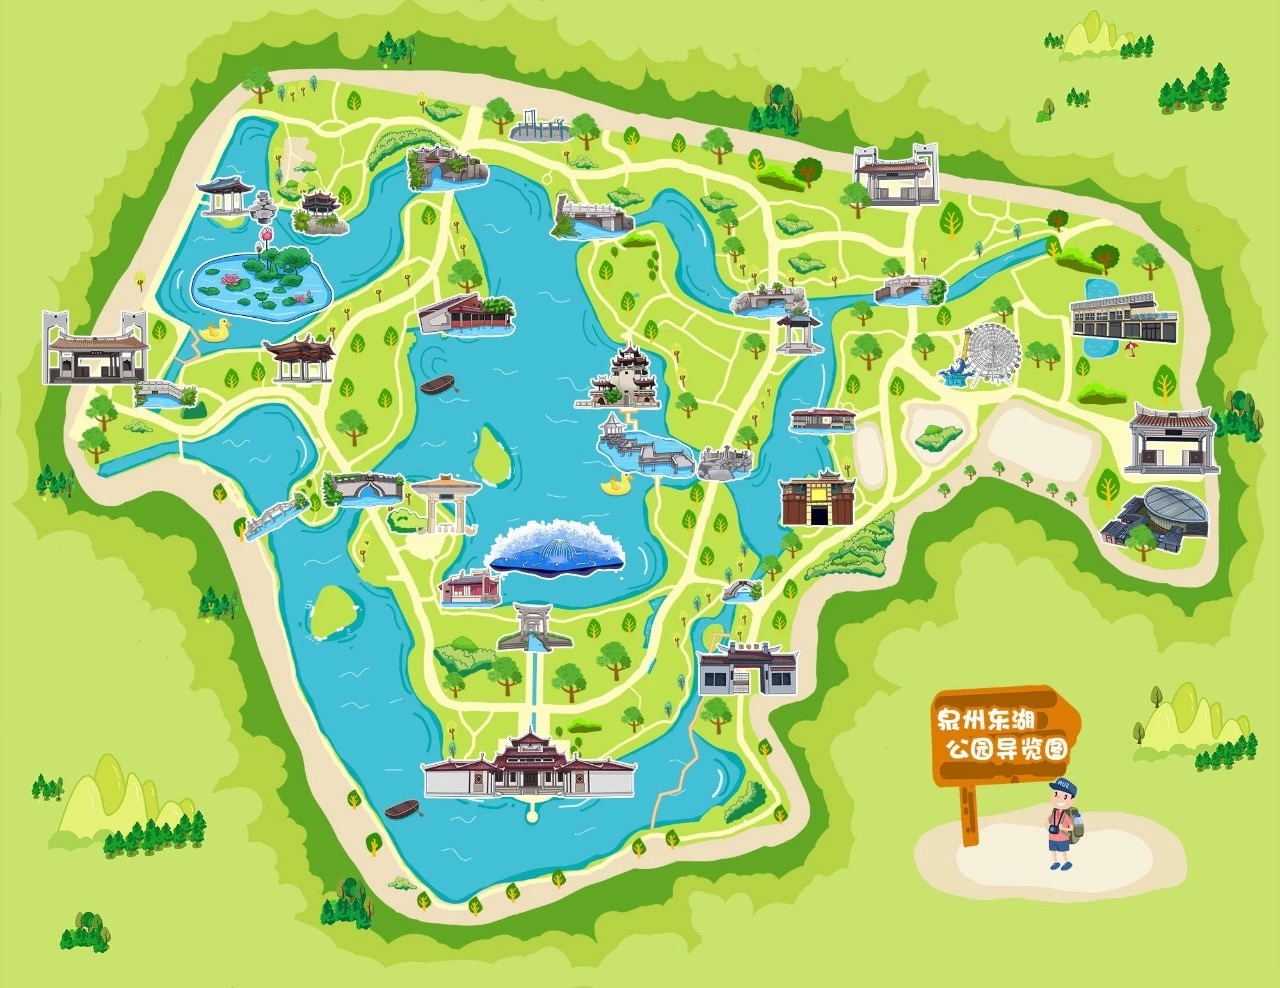 凤翔东湖公园地图图片